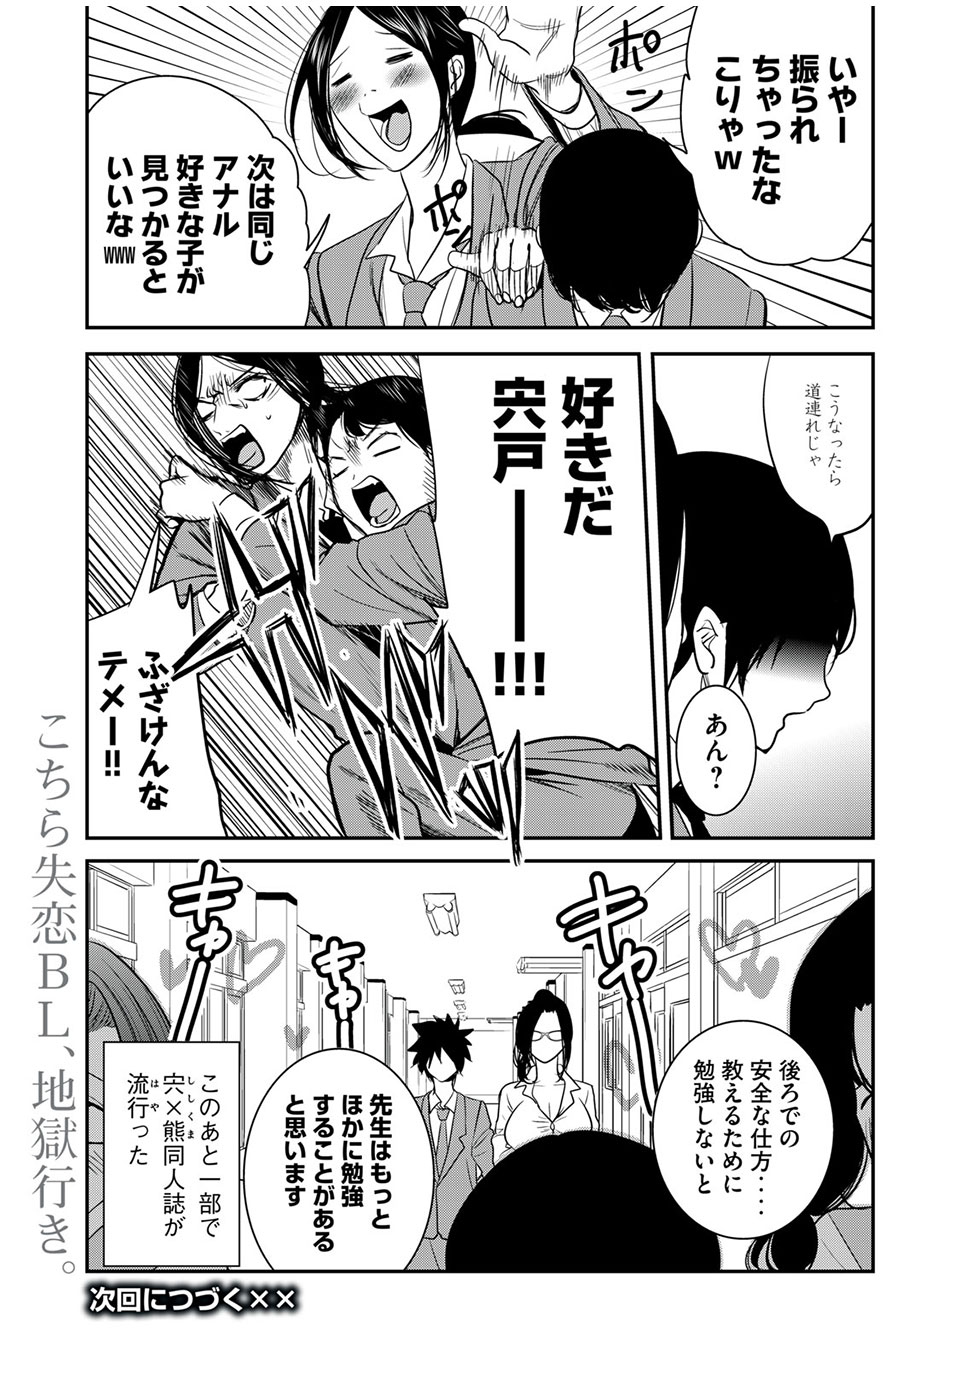 Eigo ×× Sensei - Chapter 22 - Page 11